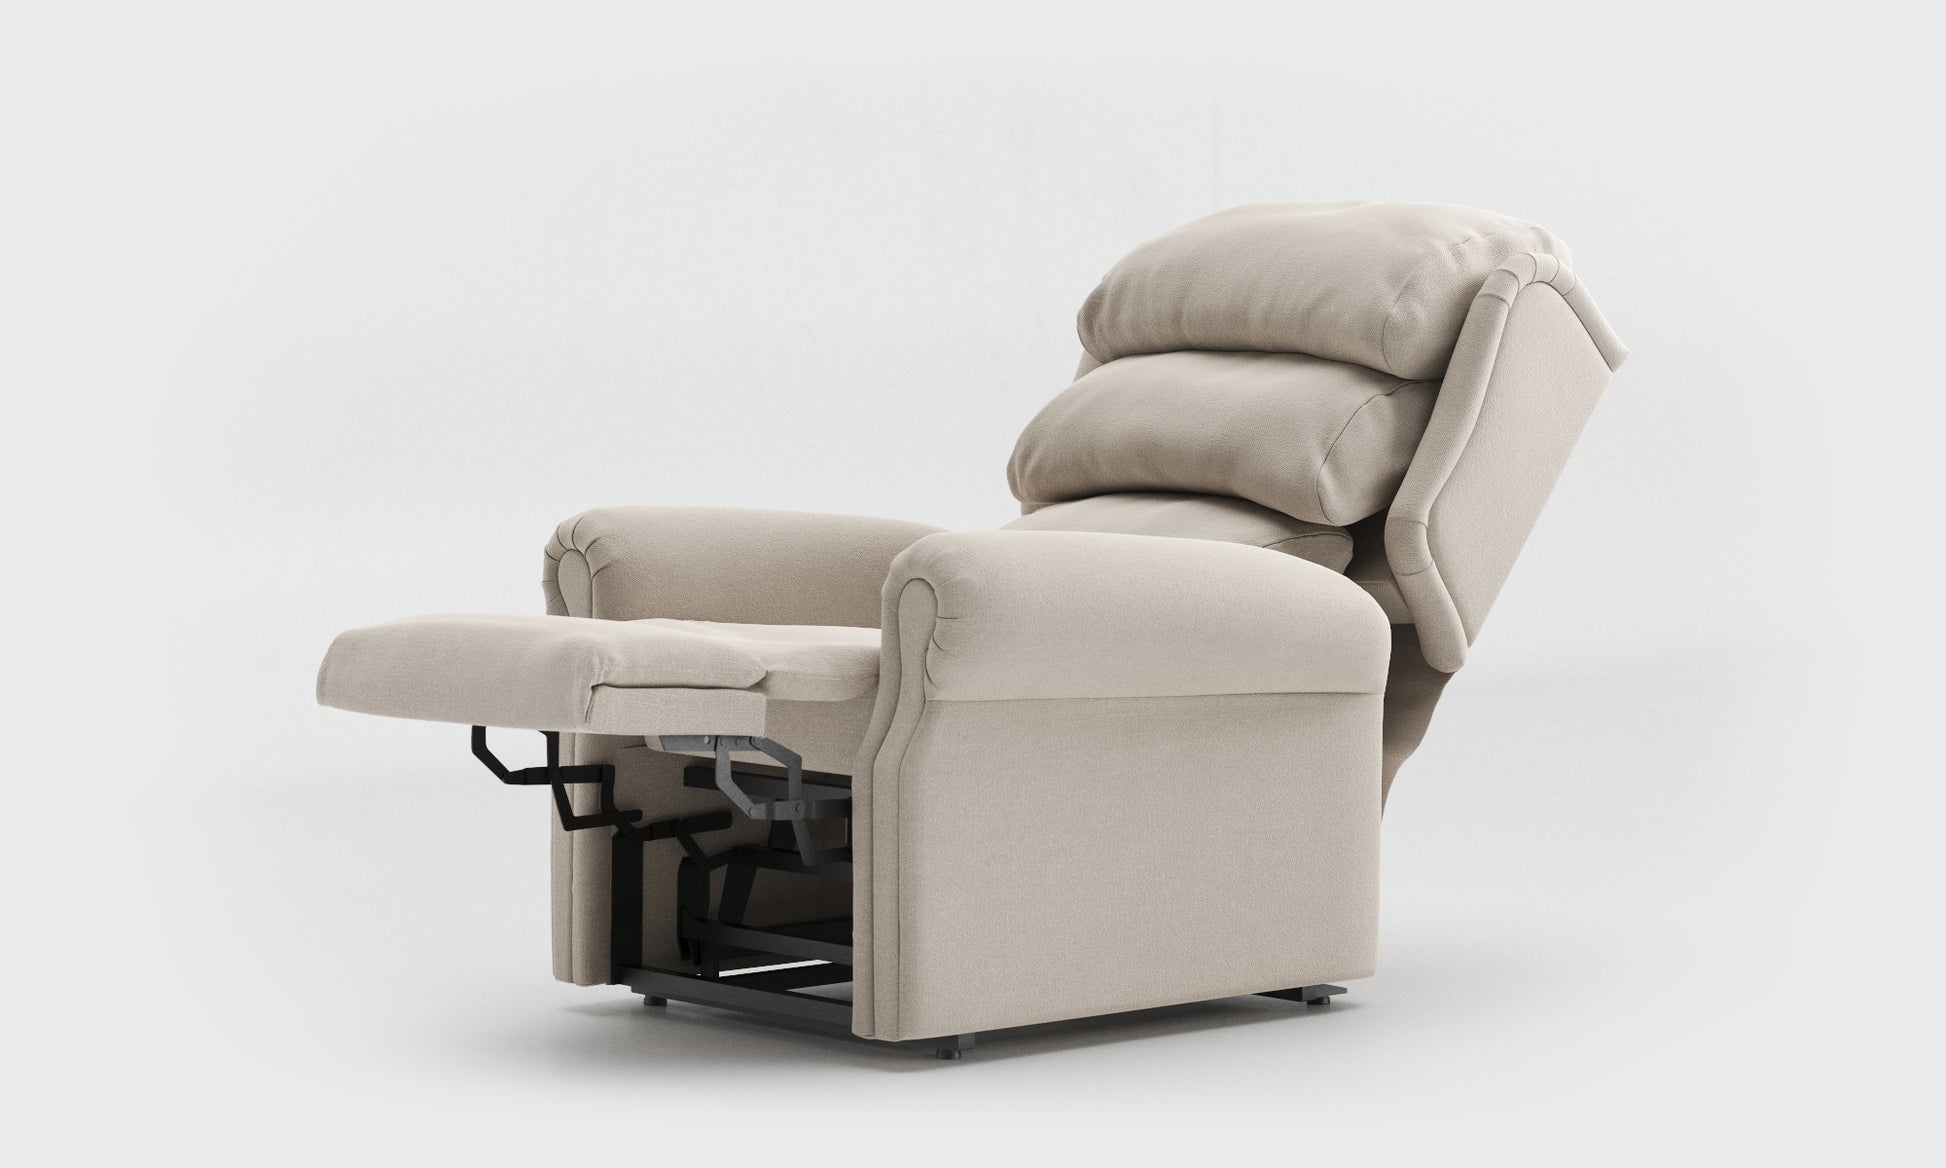 Adara Riser Recliner Chair standard waterfall fabric linen